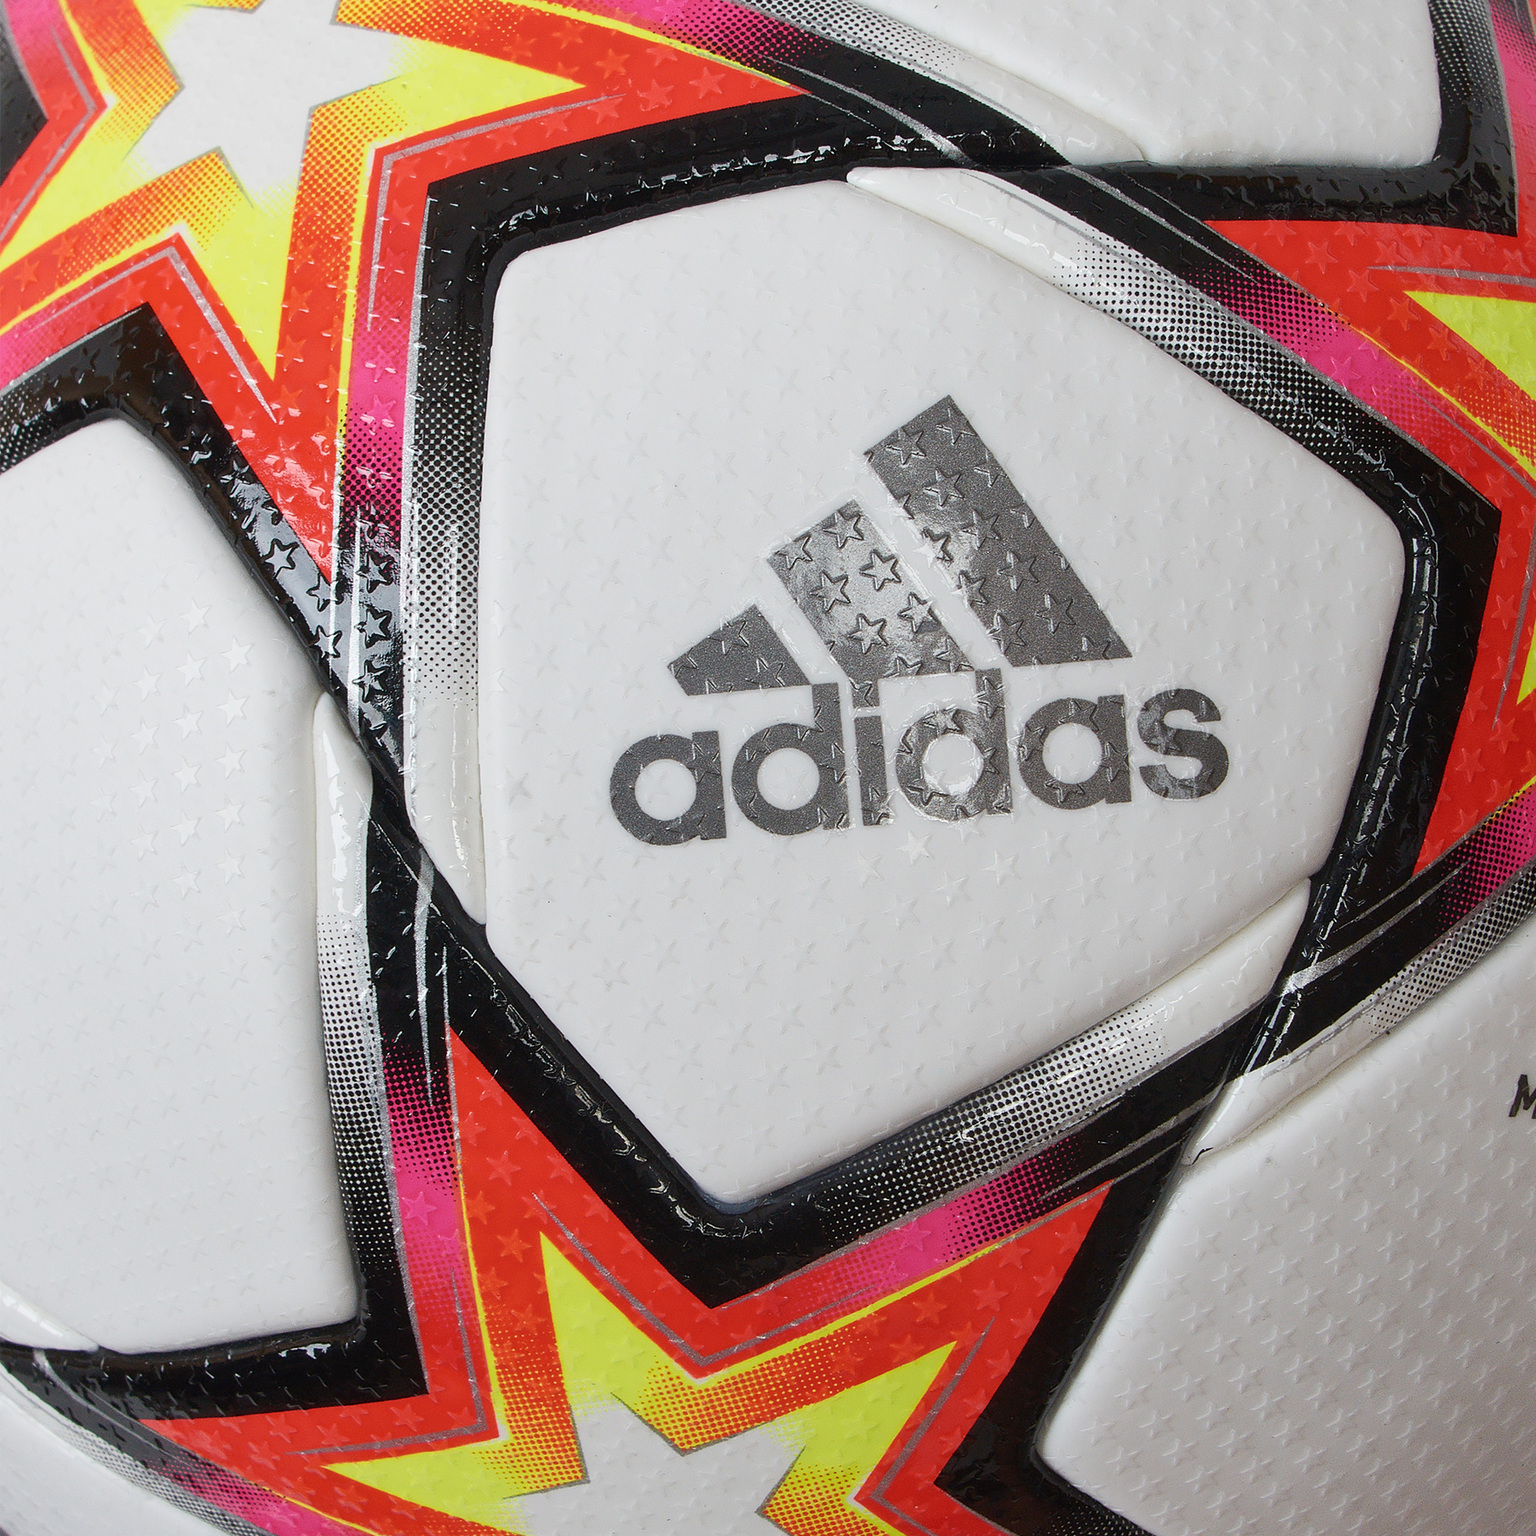 Официальный мяч Adidas Лига Чемпионов UCL Pro Pyrostorm GU0214